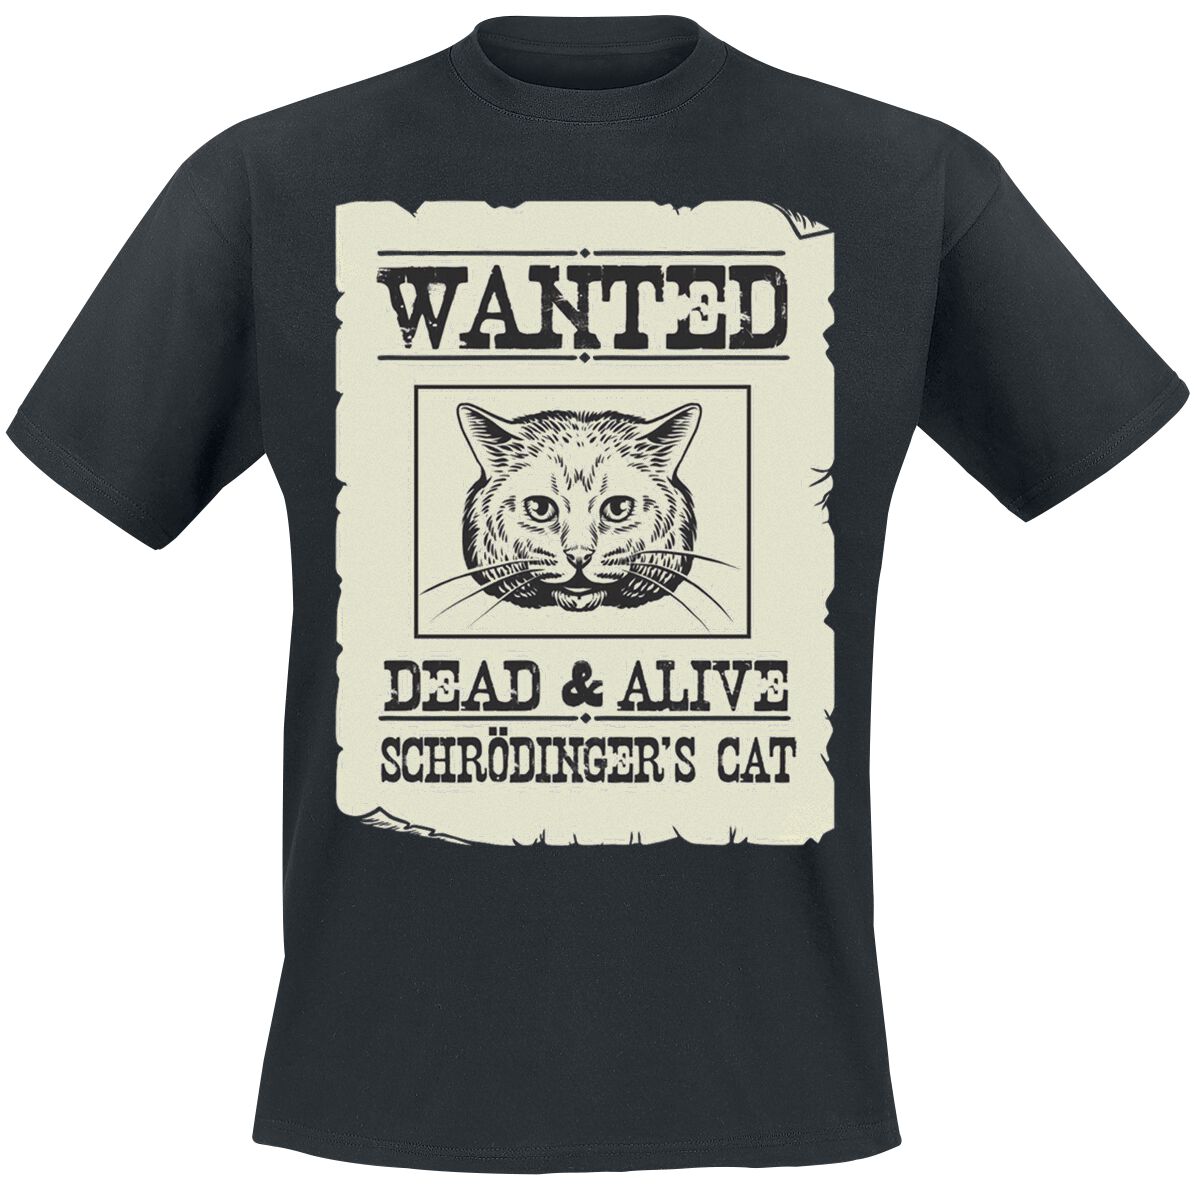 Tierisch Schrödinger's Cat Is Alive T-Shirt schwarz in XXL